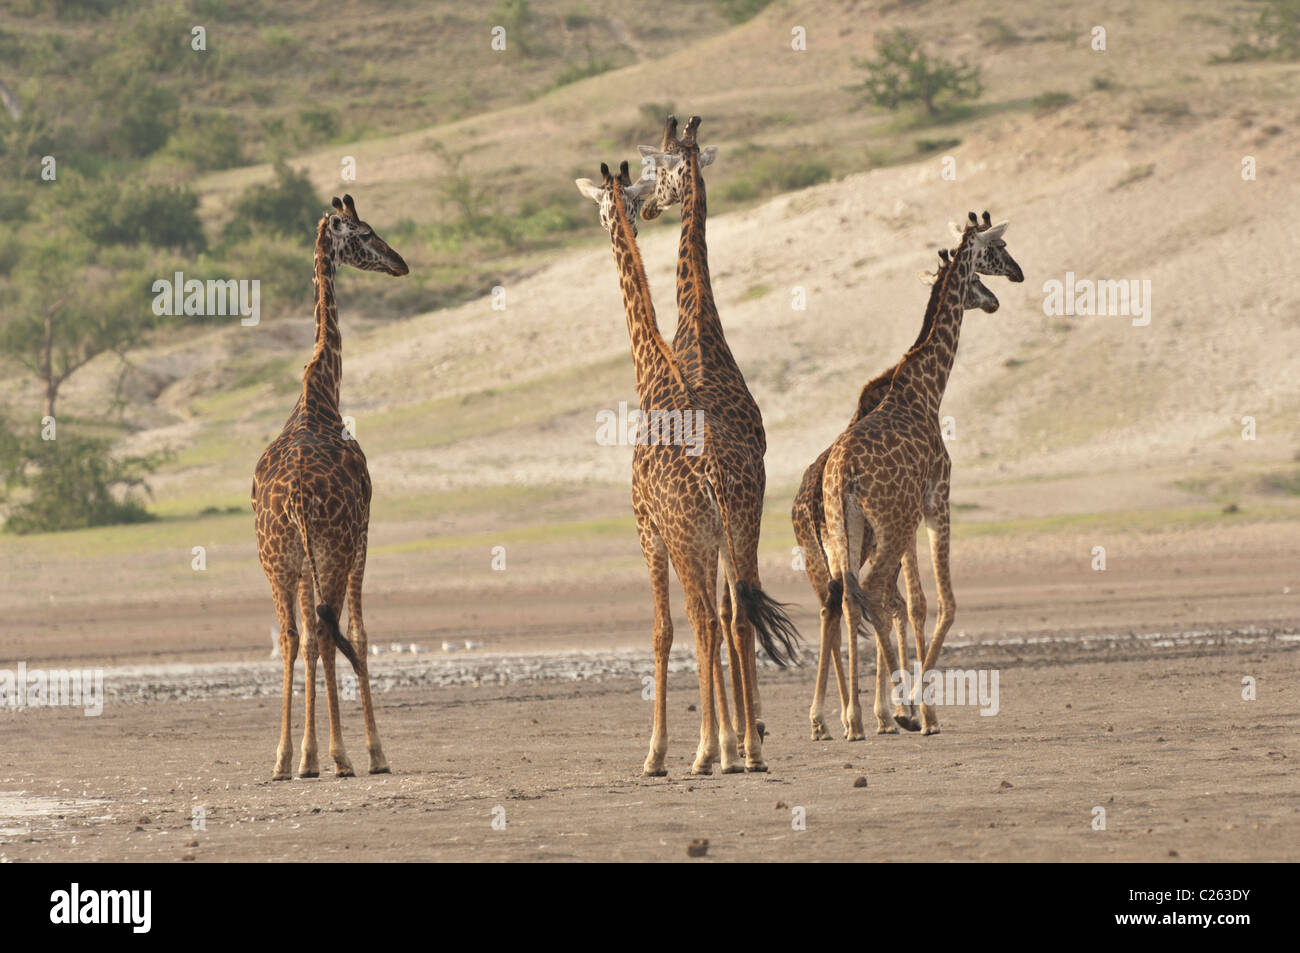 Stock photo of giraffes walking ialong the shores of Lake Ndutu. Stock Photo